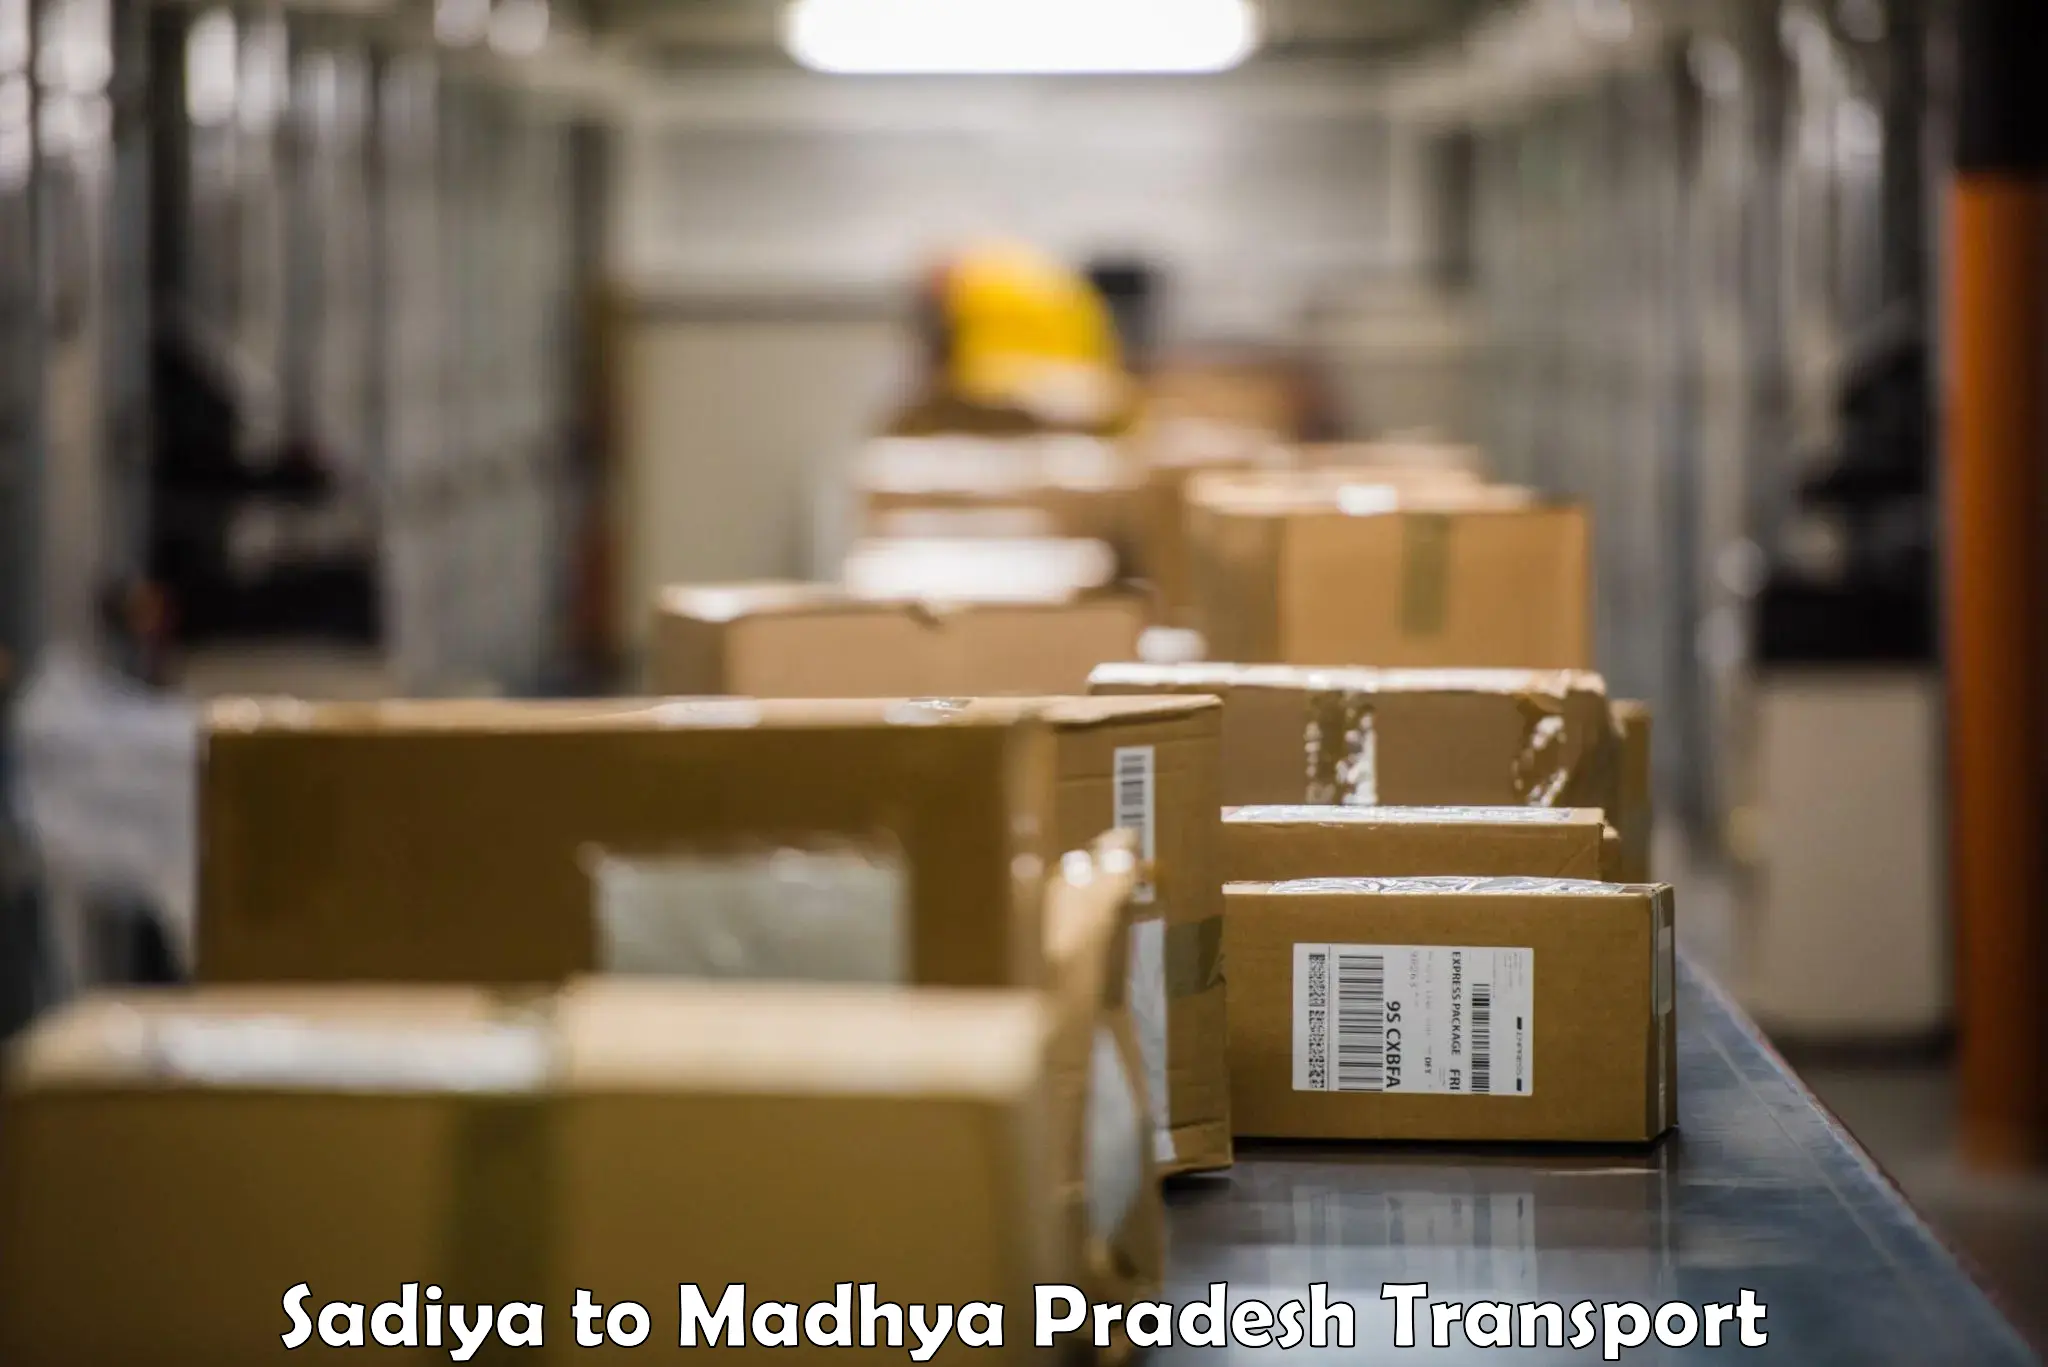 Commercial transport service Sadiya to Madhya Pradesh